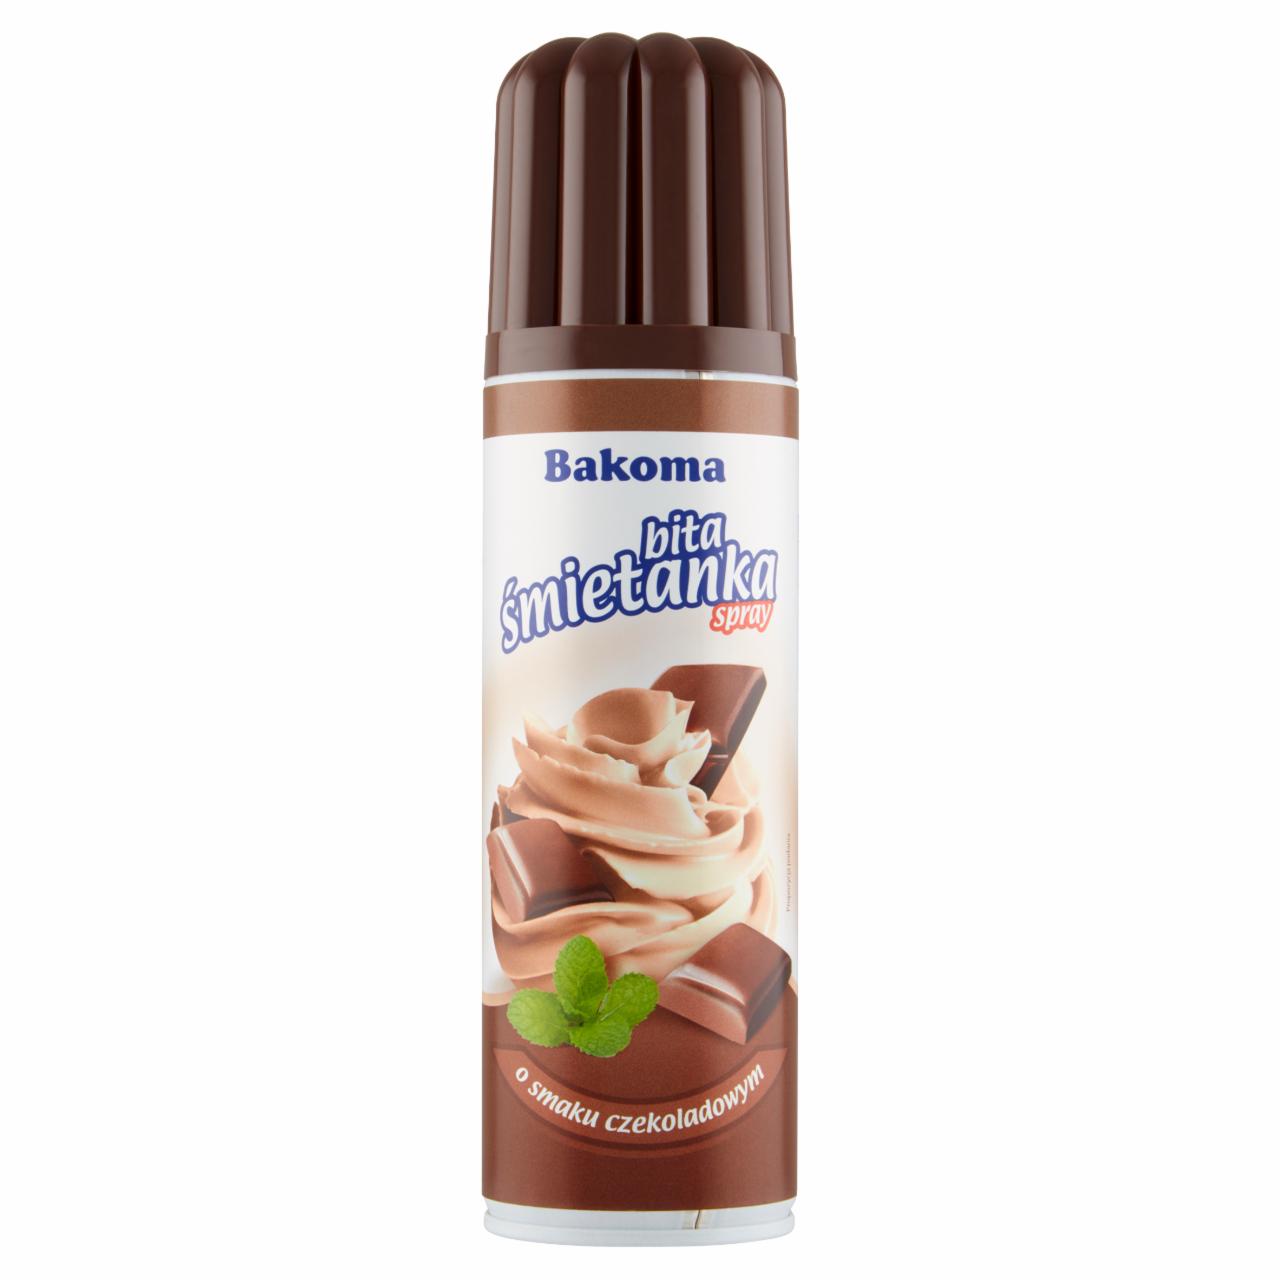 Zdjęcia - Bakoma Bita śmietanka spray o smaku czekoladowym 250 g